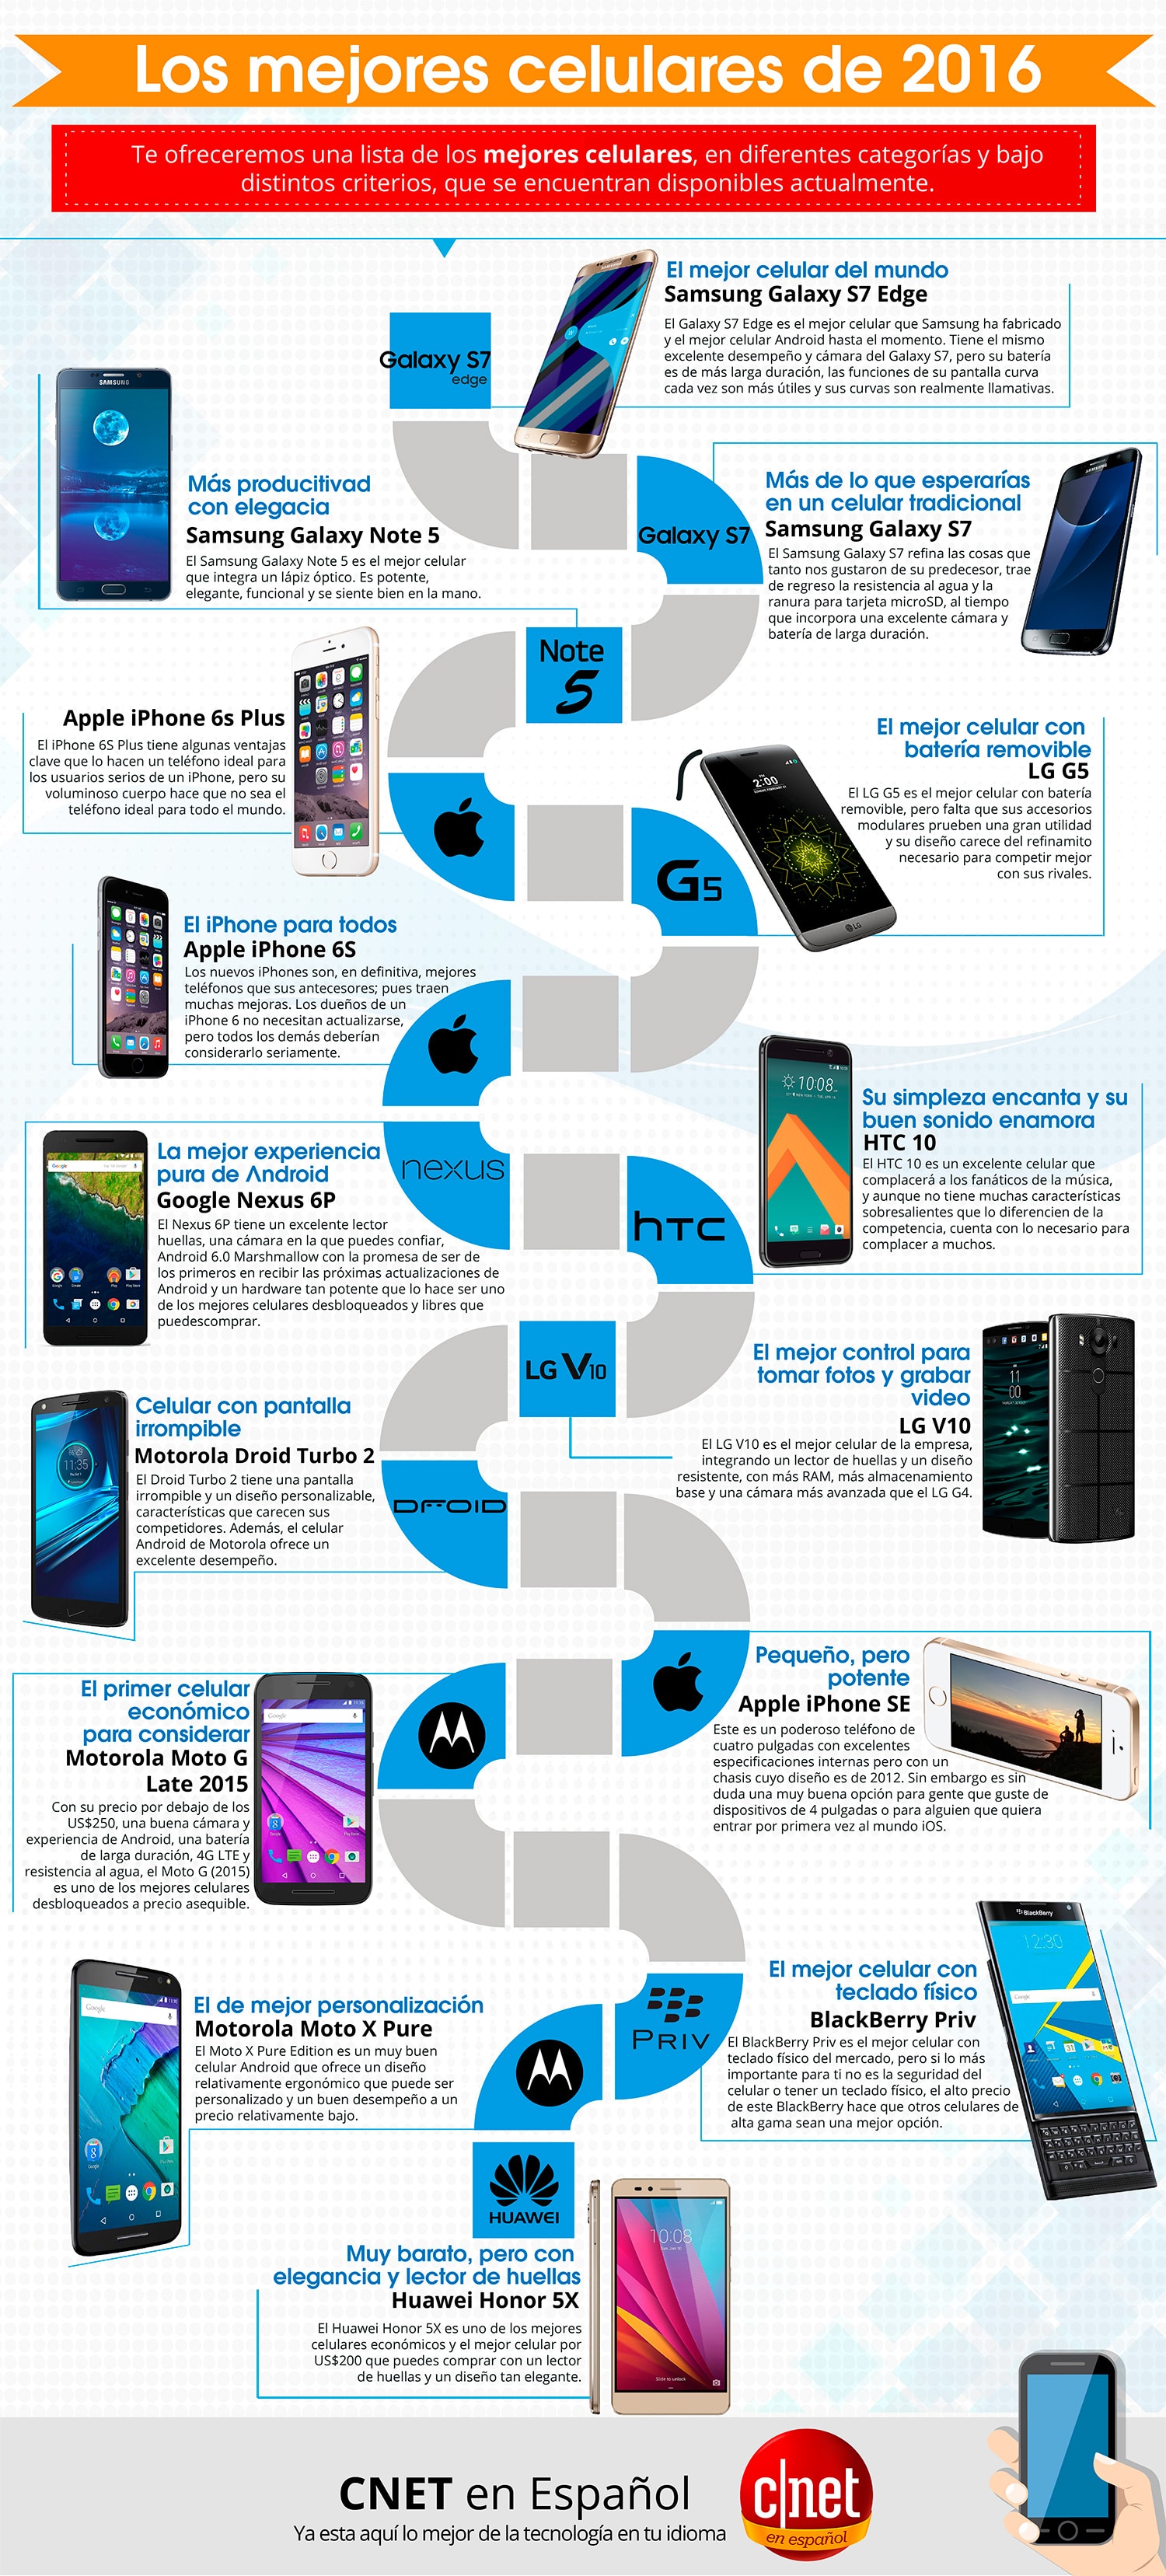 Infografia Los mejores celulares